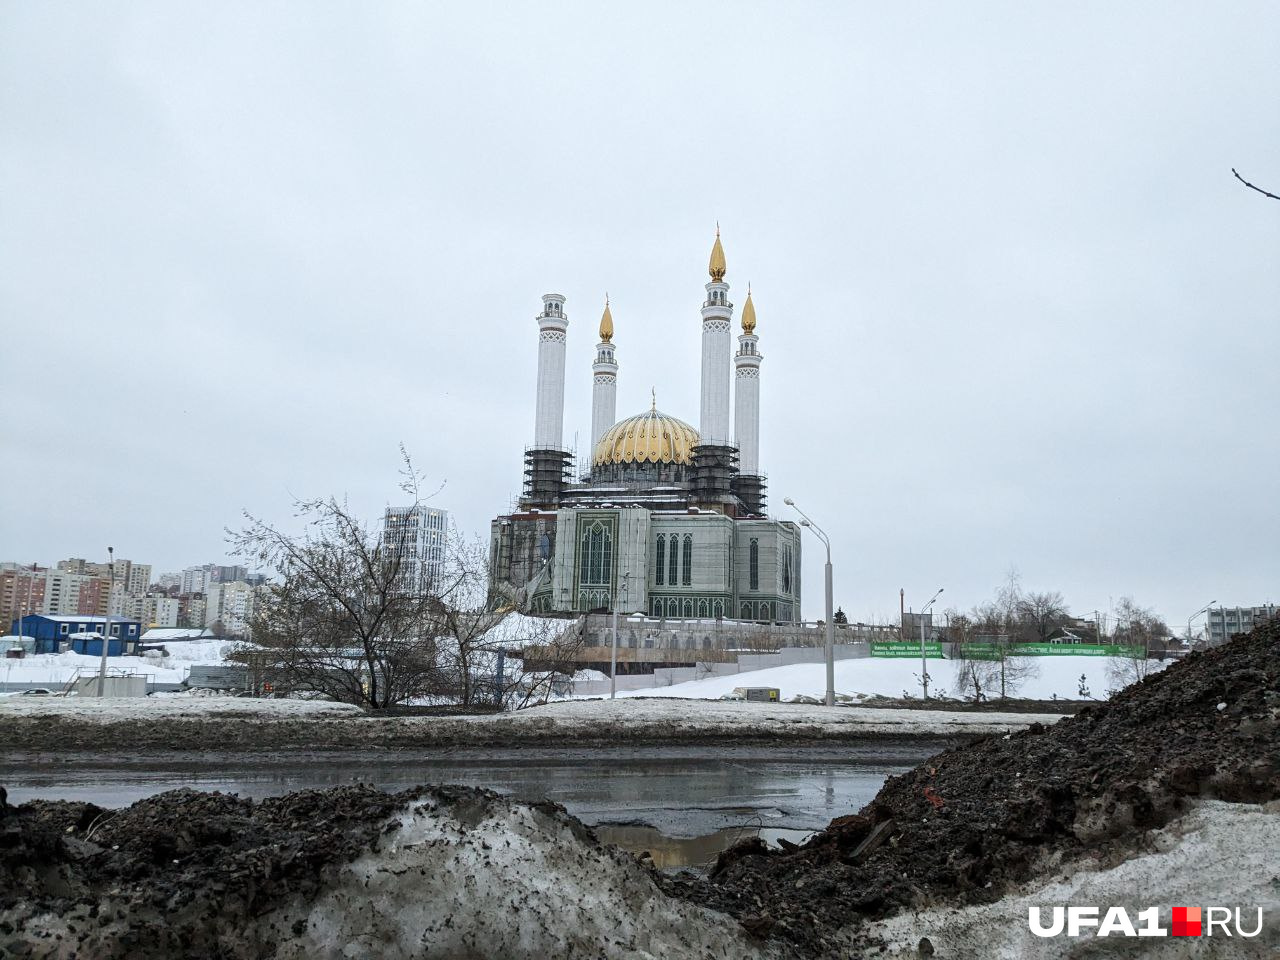 А ведь эта мечеть должна стать символом Уфы. Печальное зрелище